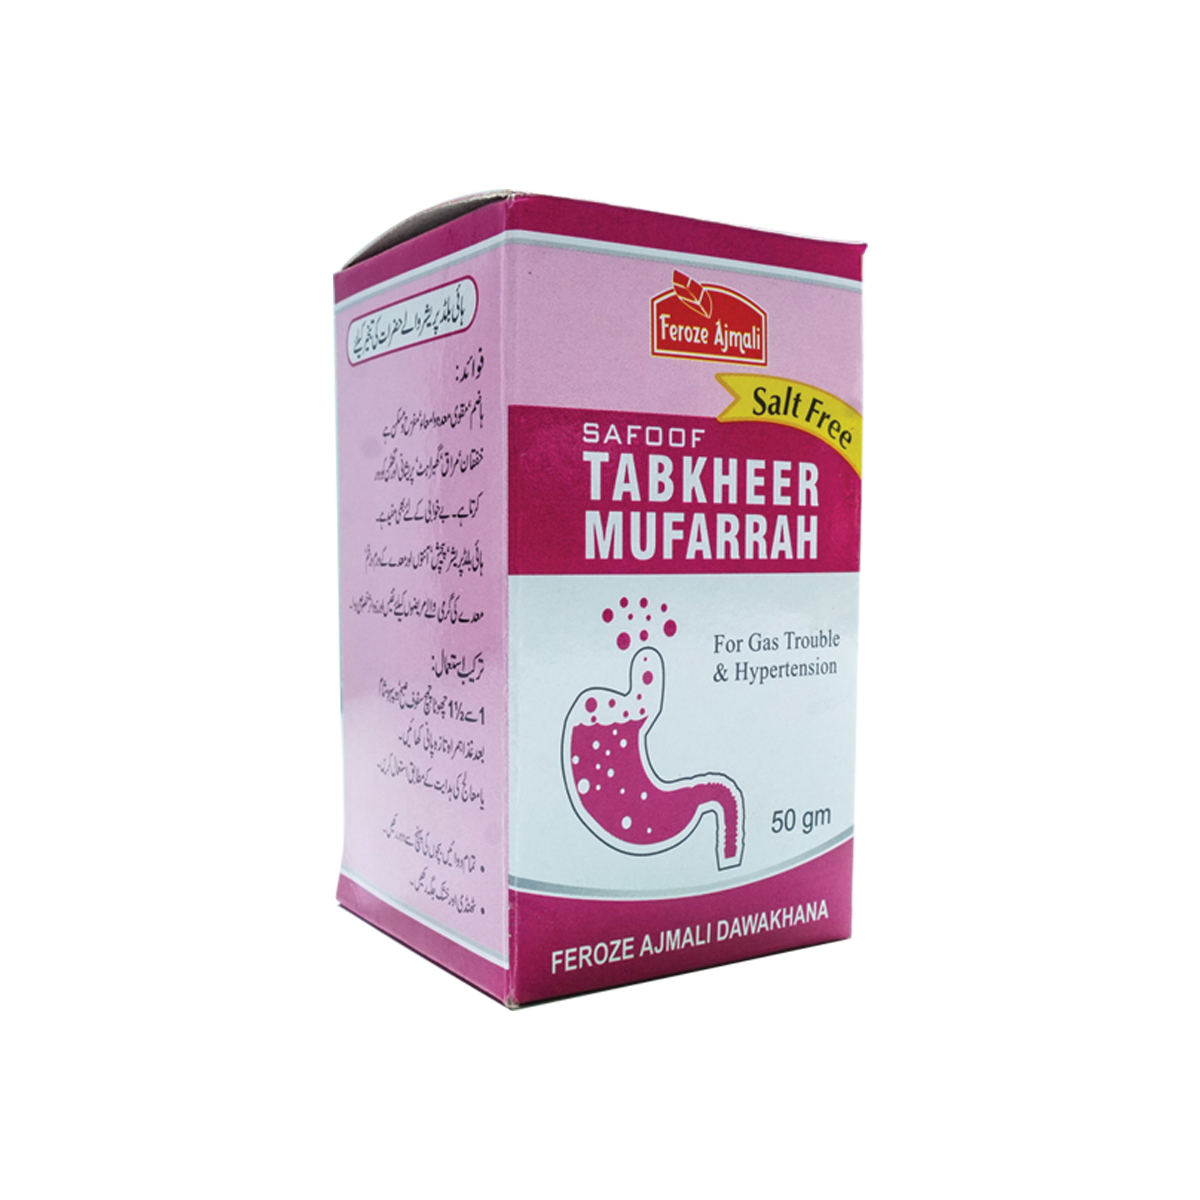 Safoof Tabkheer Mufarrah-image